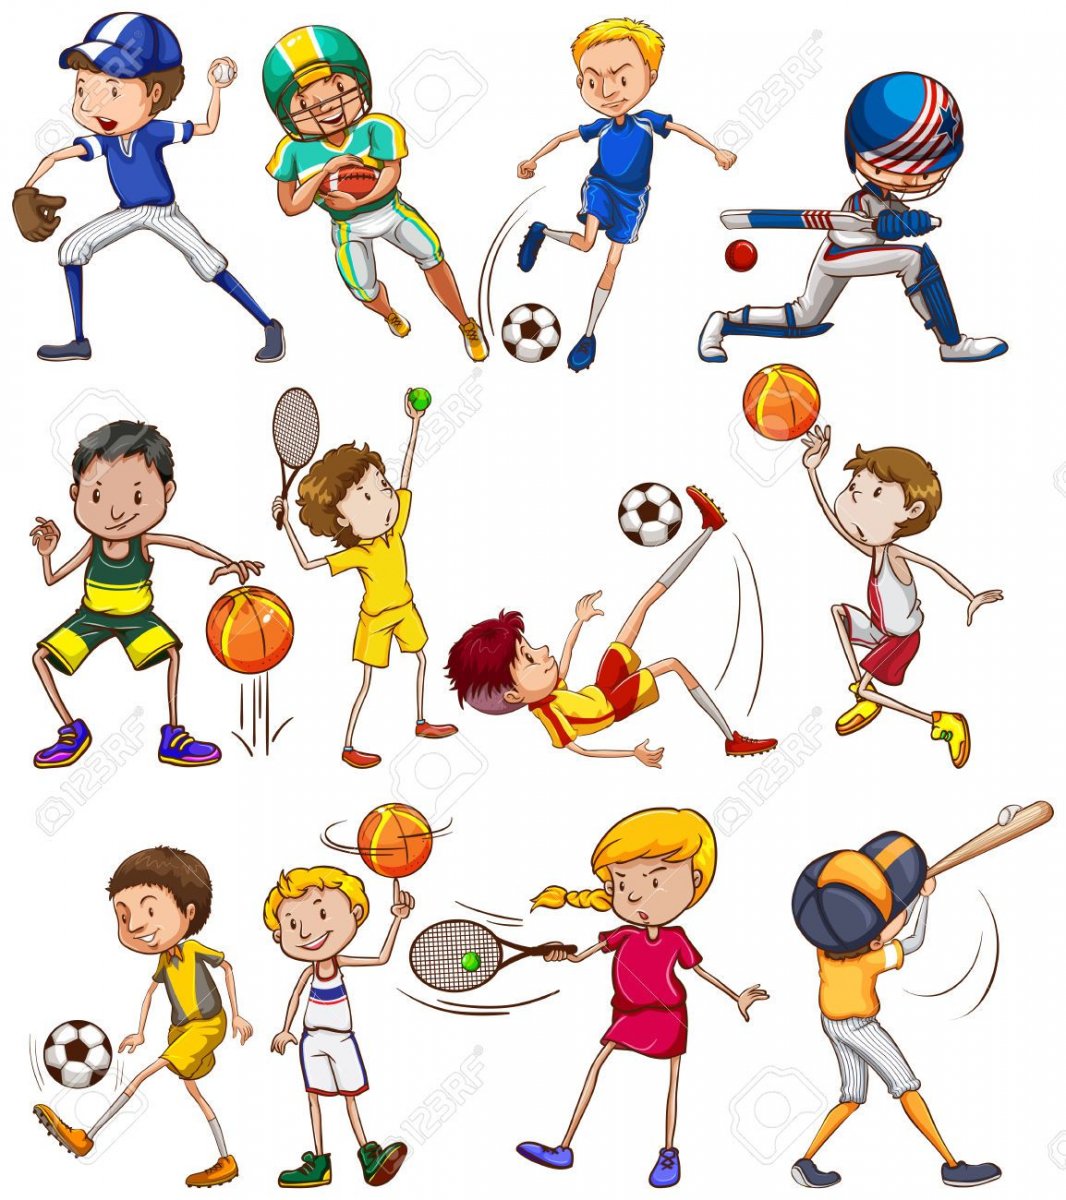 Иллюстрации с разными видами спорта